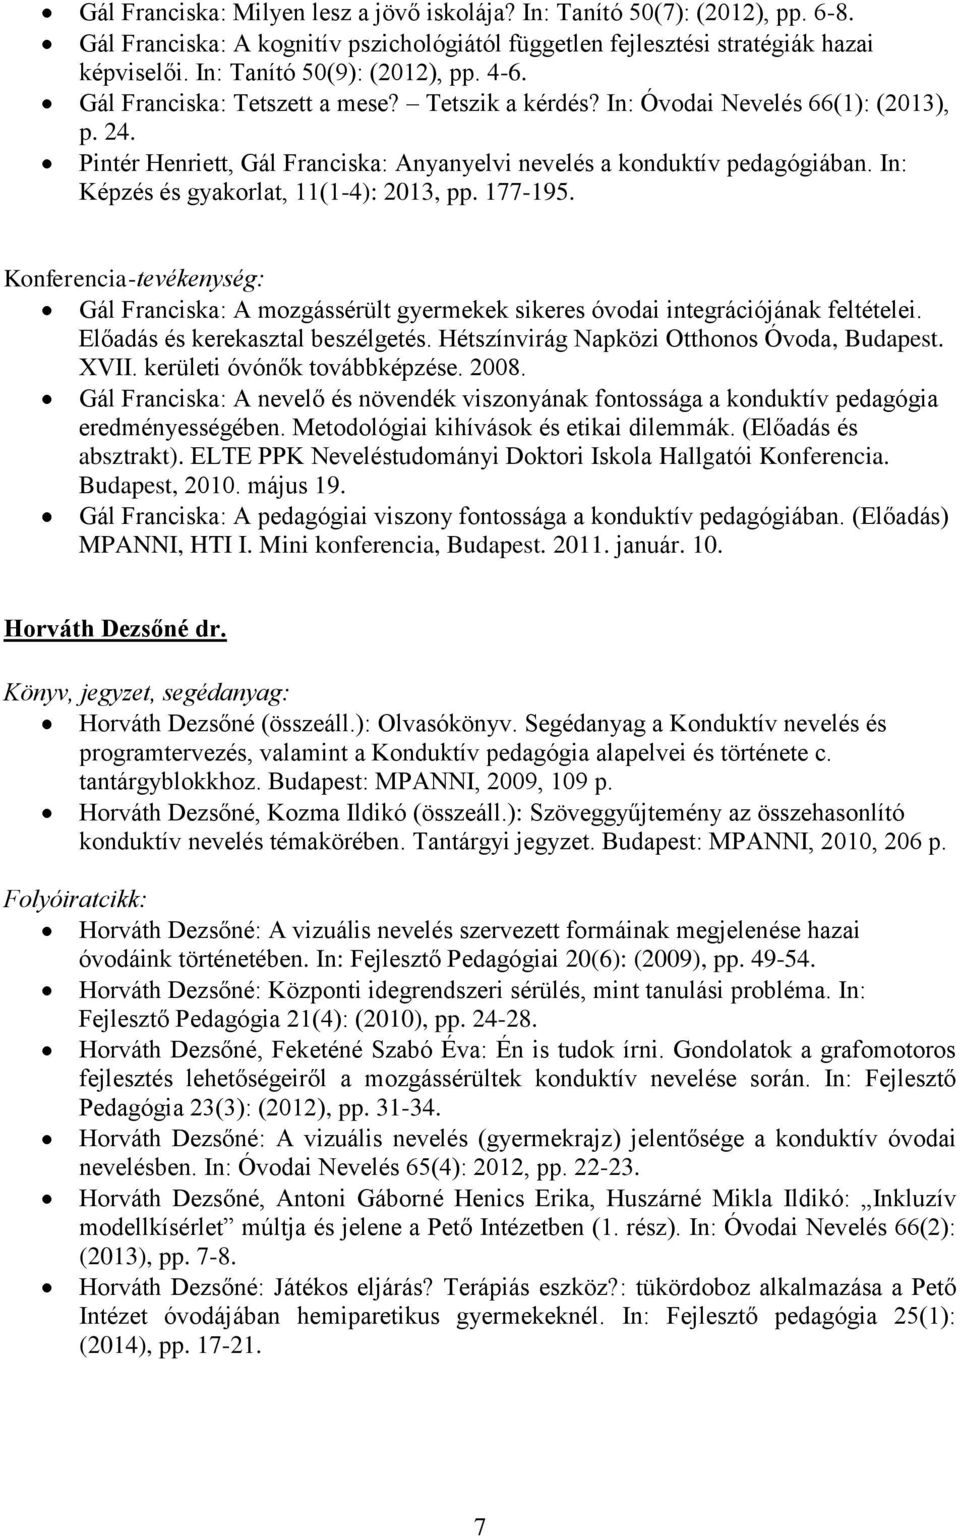 Pintér Henriett, Gál Franciska: Anyanyelvi nevelés a konduktív pedagógiában. In: Képzés és gyakorlat, 11(1-4): 2013, pp. 177-195.